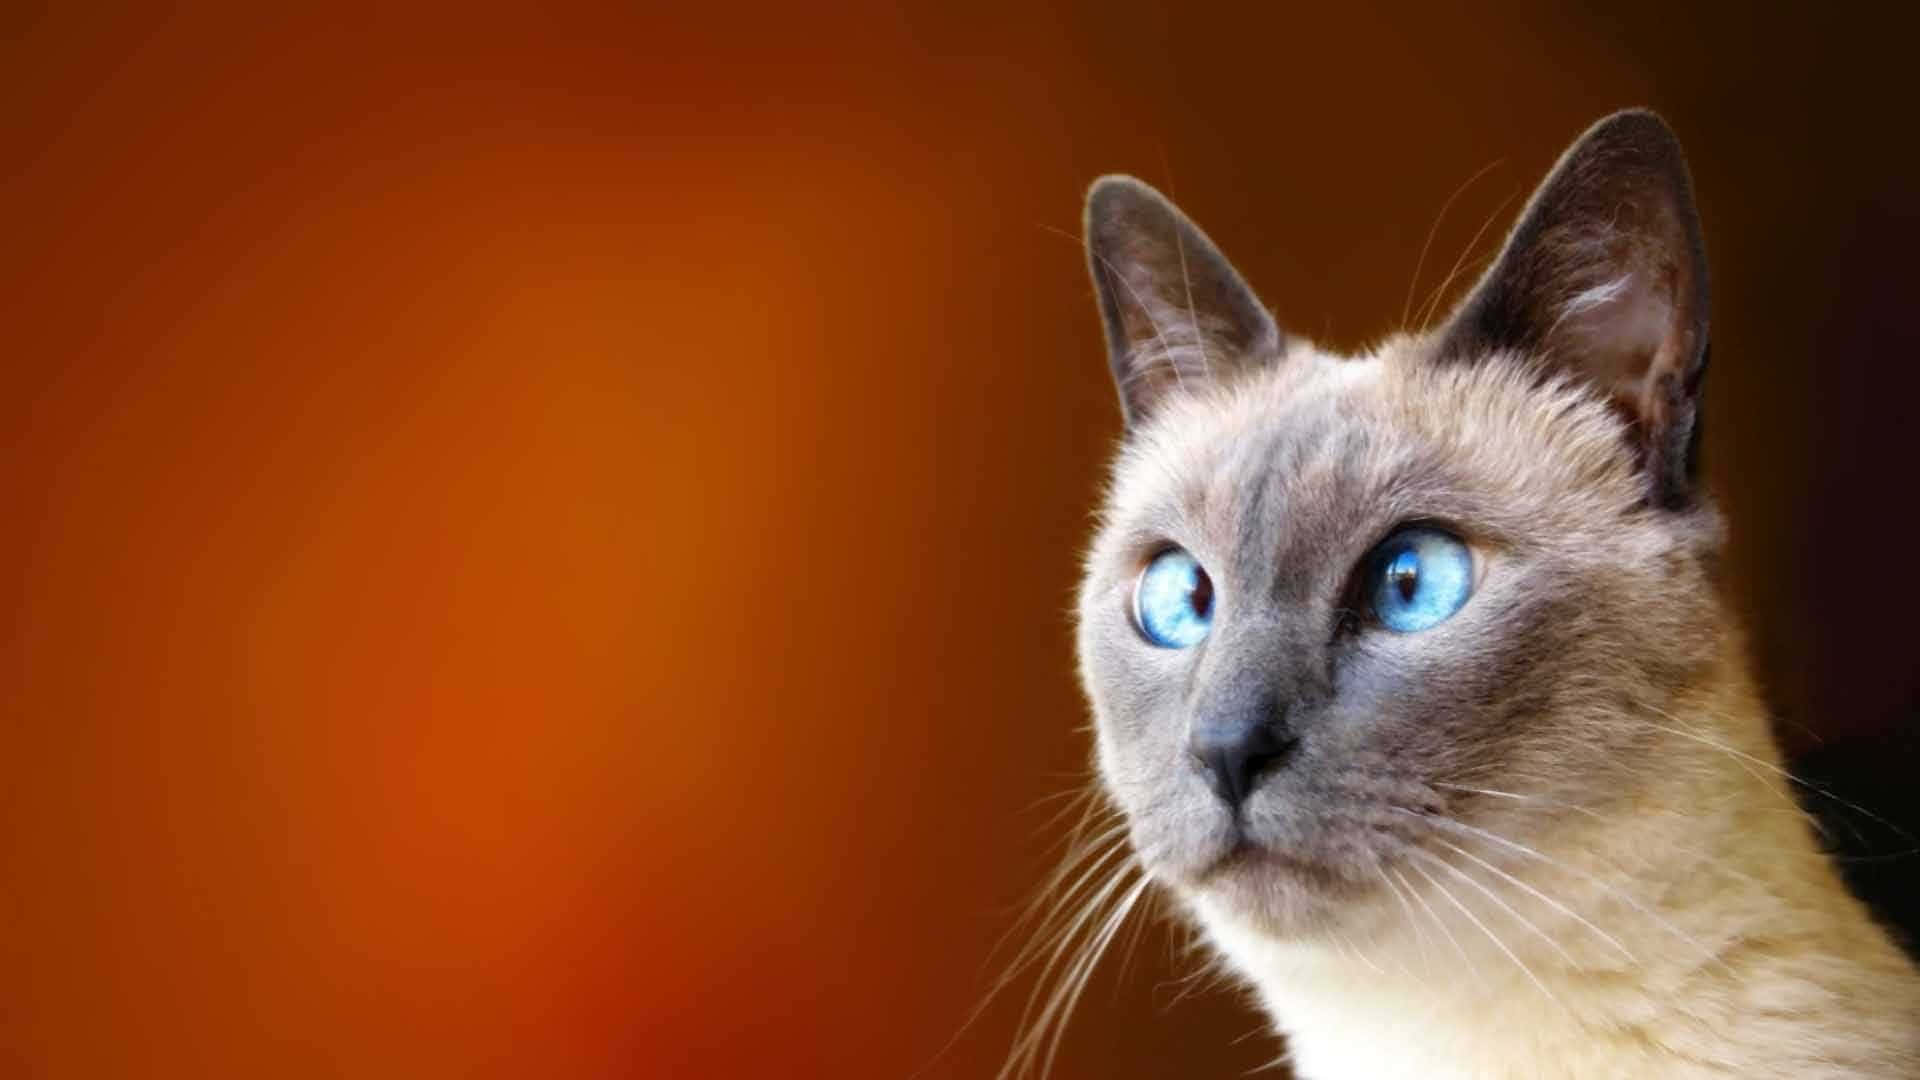 Imagemestranha De Um Gato Siamês De Olhos Cruzados.